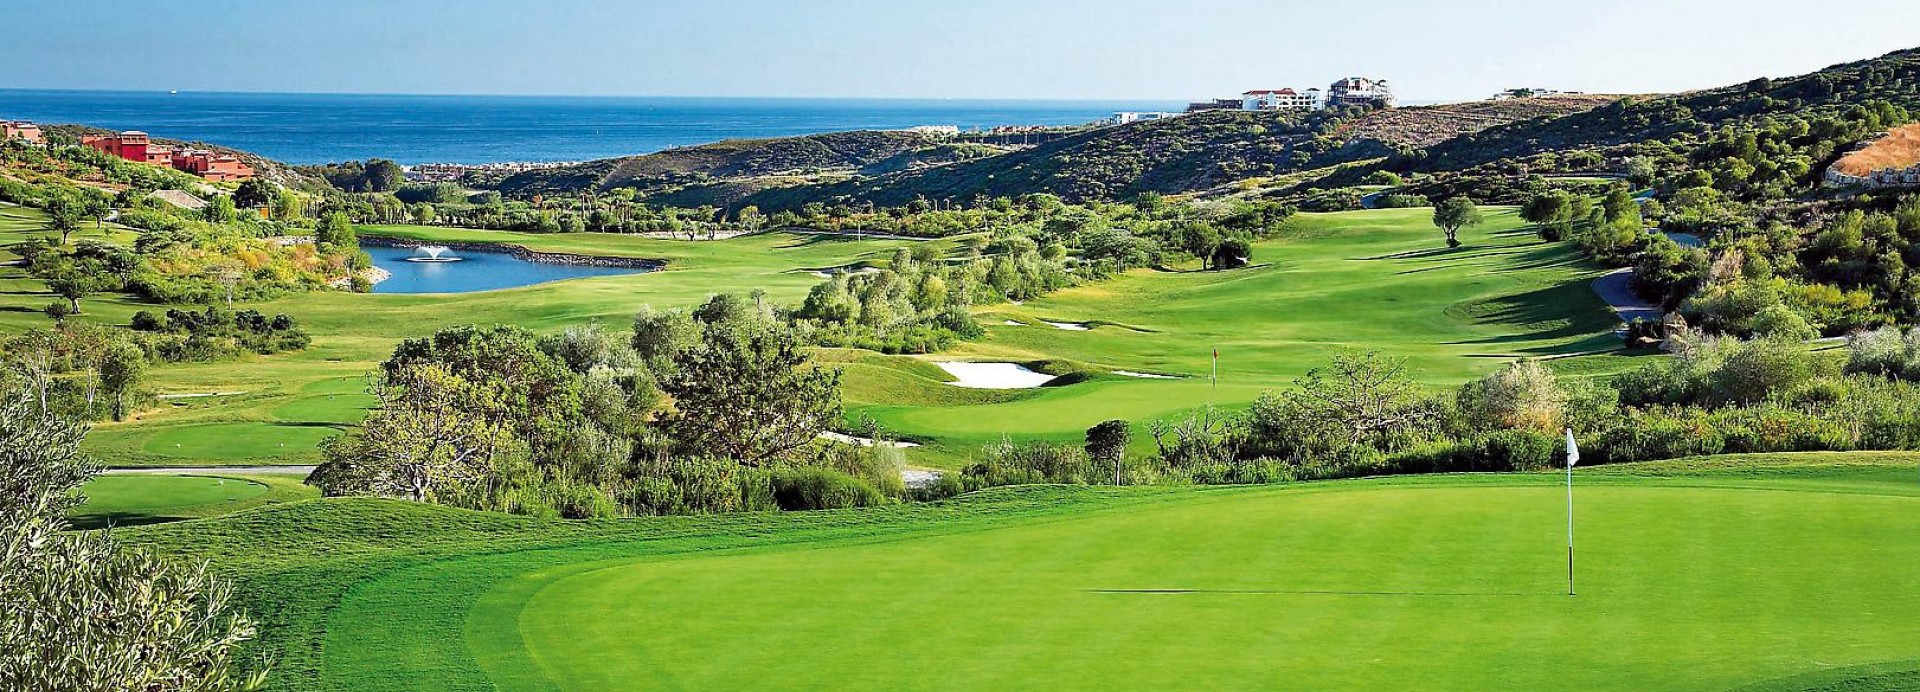 Finca Cortesin Golf Club  | Golfové zájezdy, golfová dovolená, luxusní golf